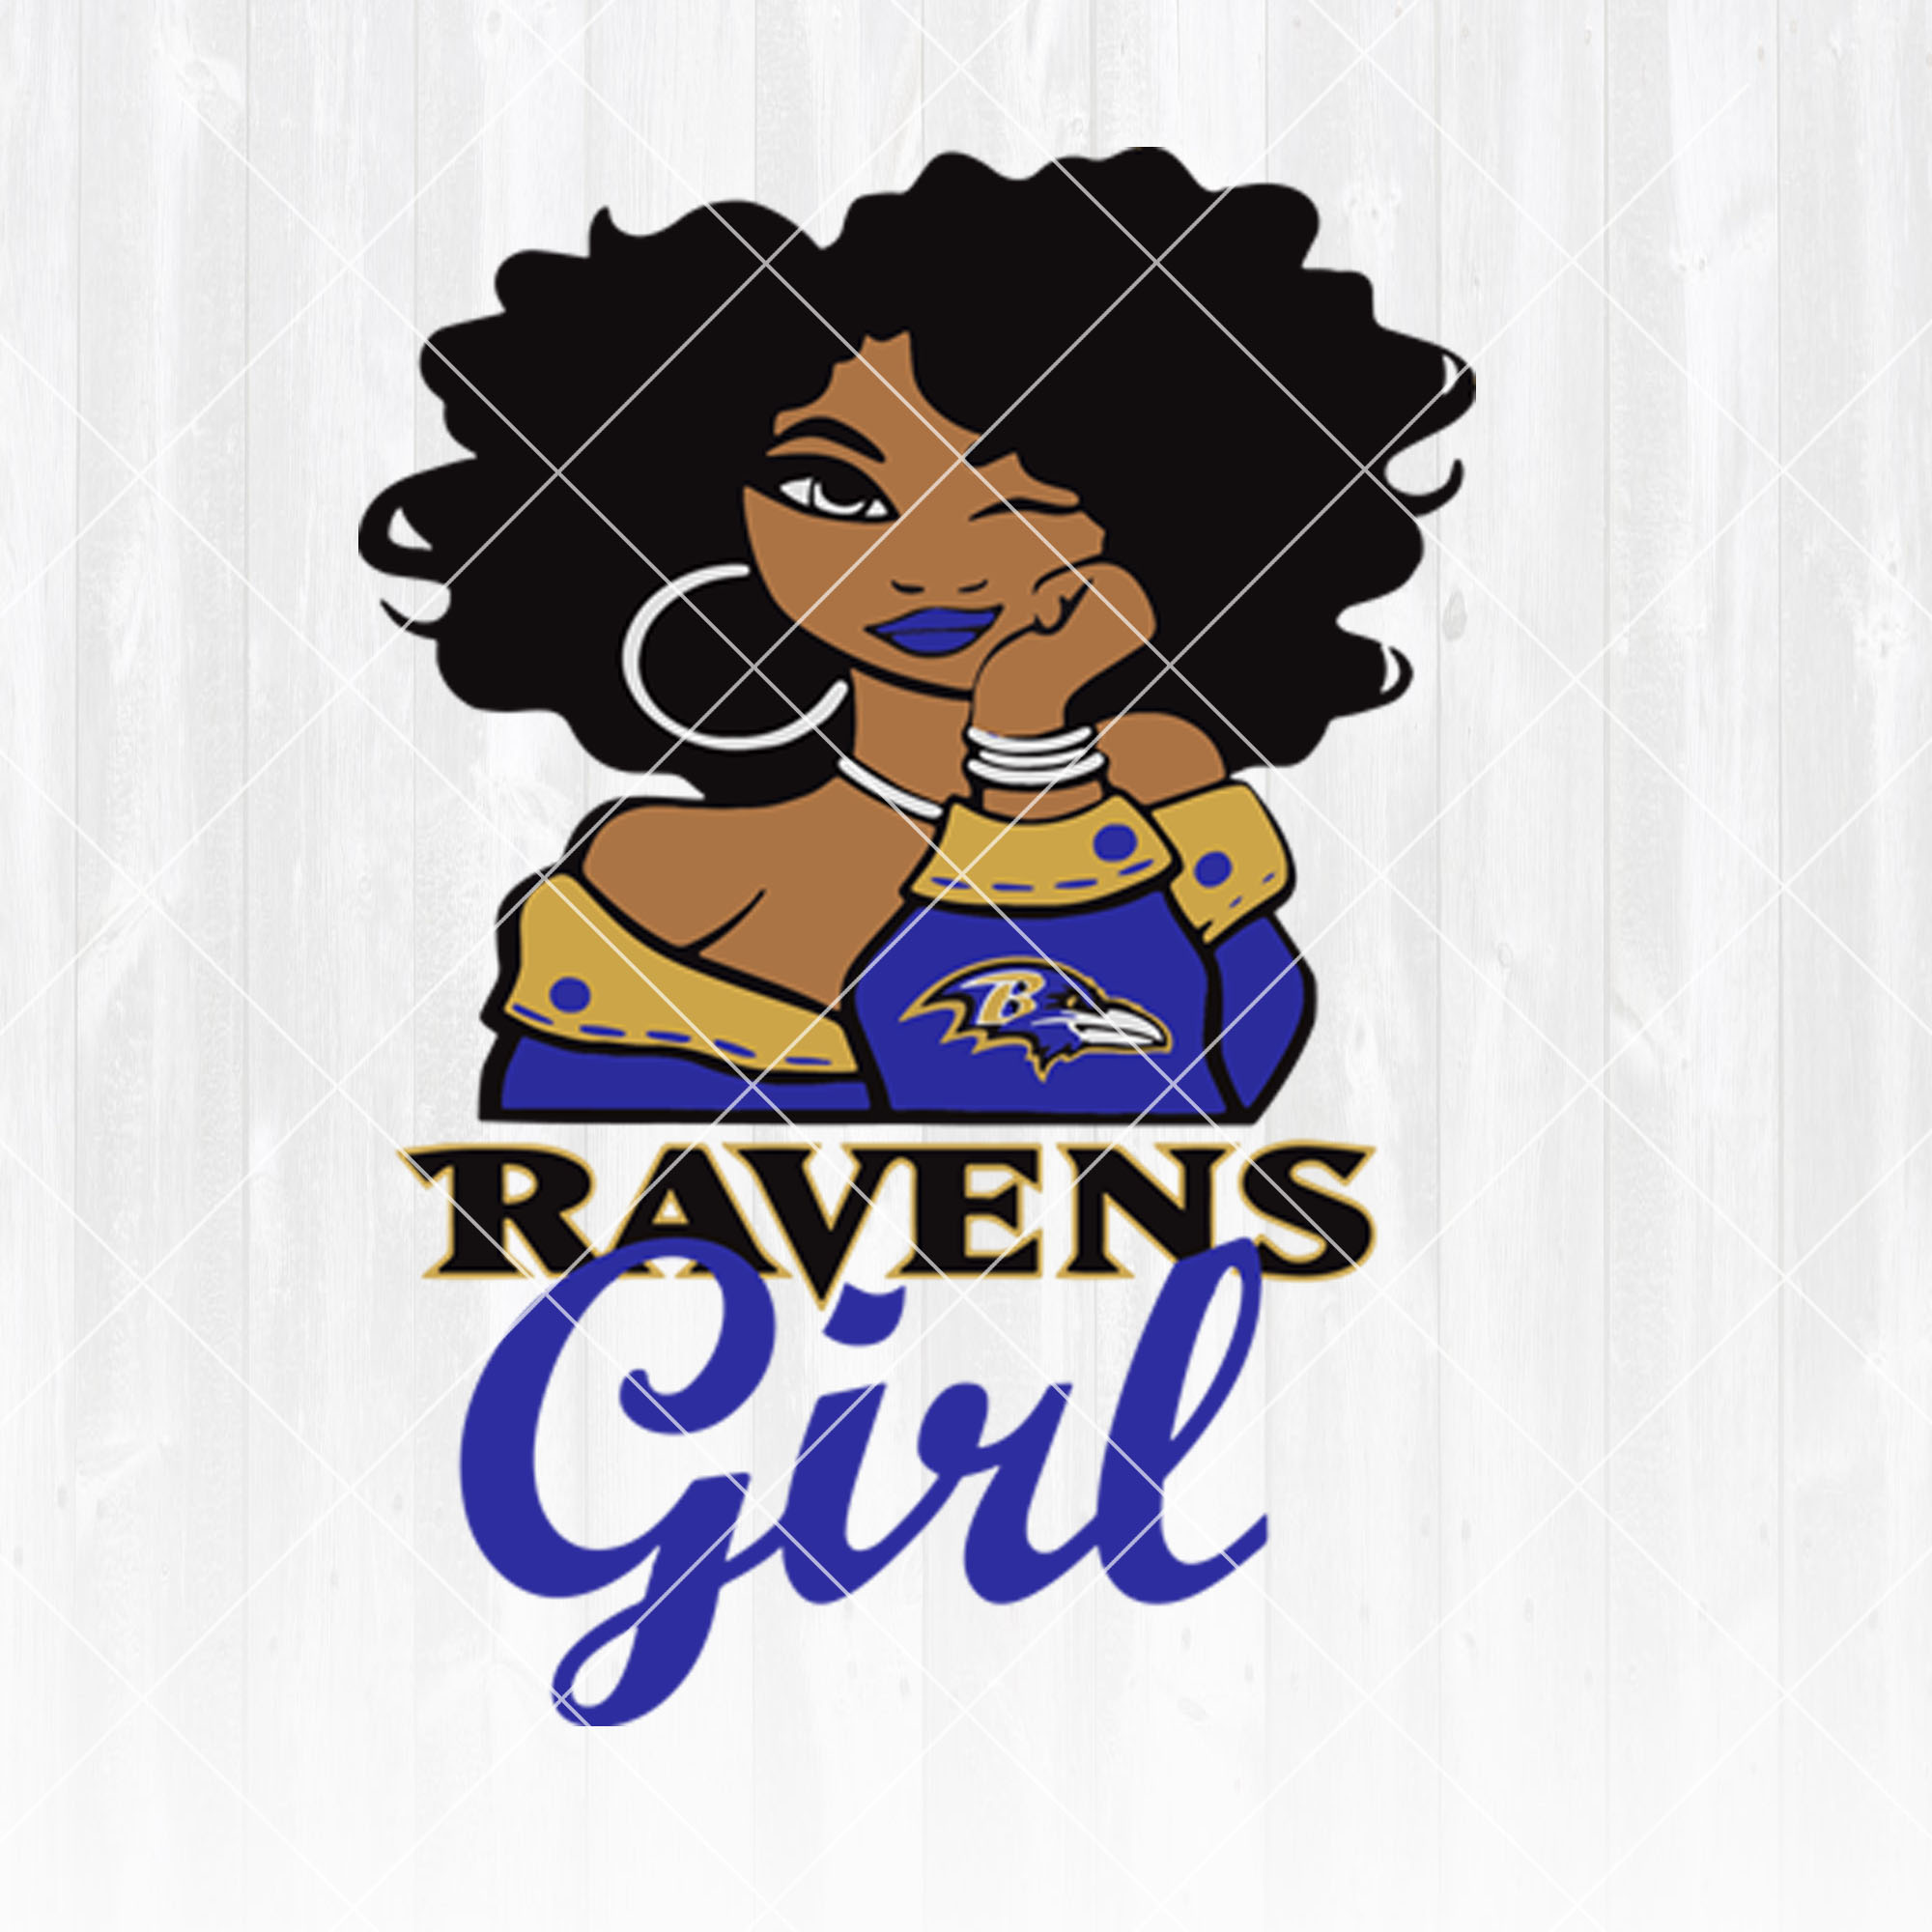 Baltimore Ravens Girl svg  - Baltimore Ravens Girl - NFL Team Girl Svg -Football Team Svg - Football Svg NFL Svg - Digital Download 